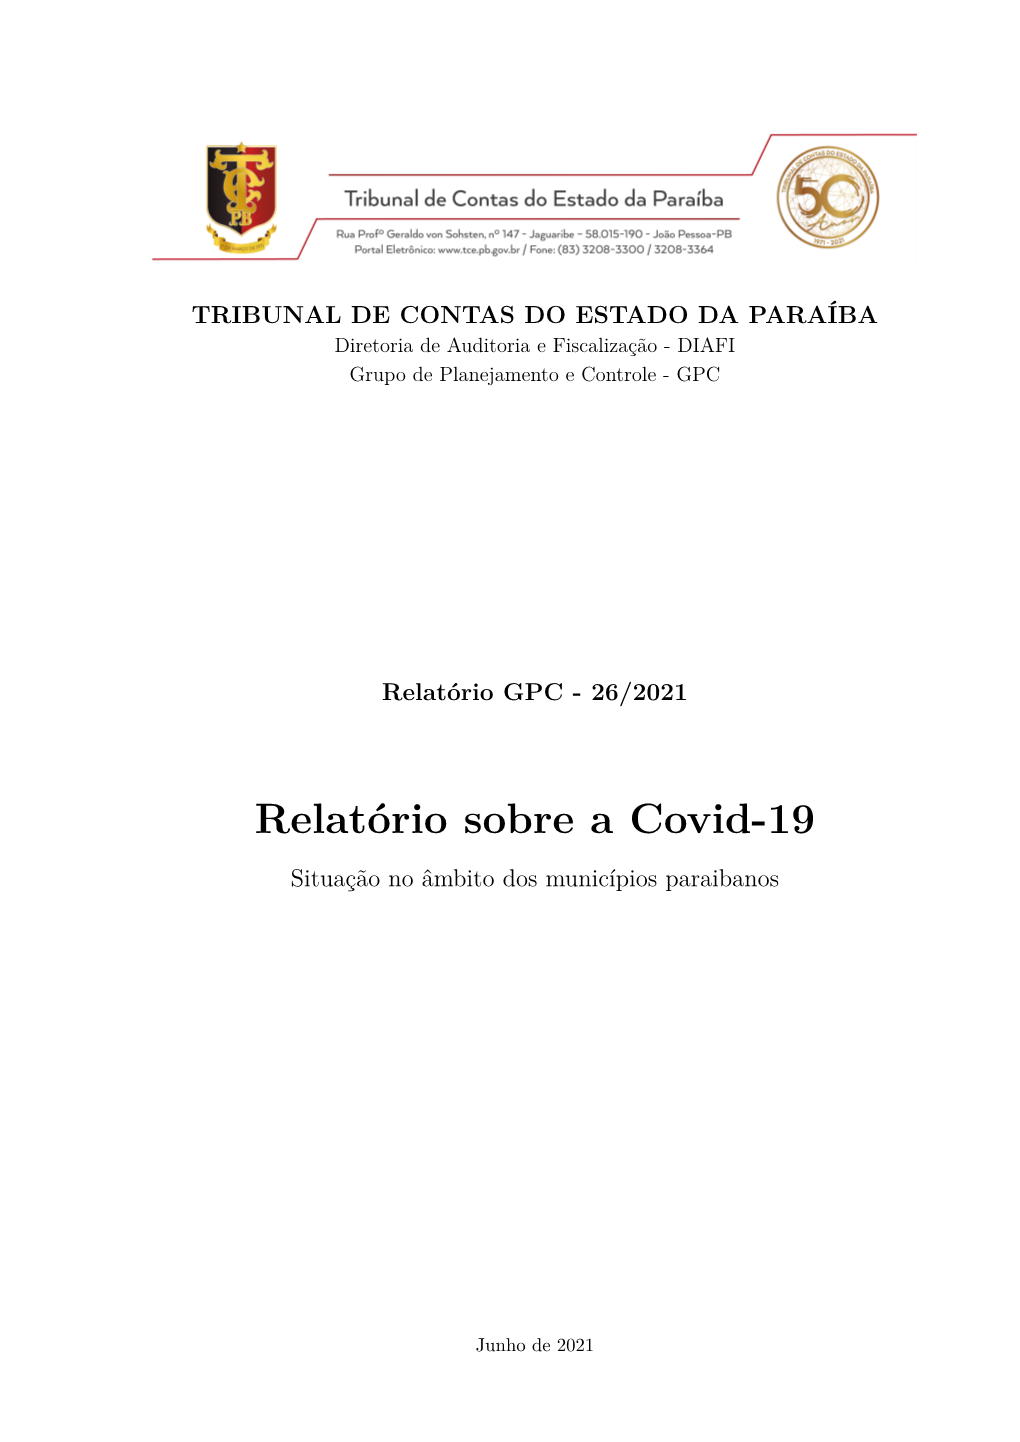 Relatório Sobre a Covid-19